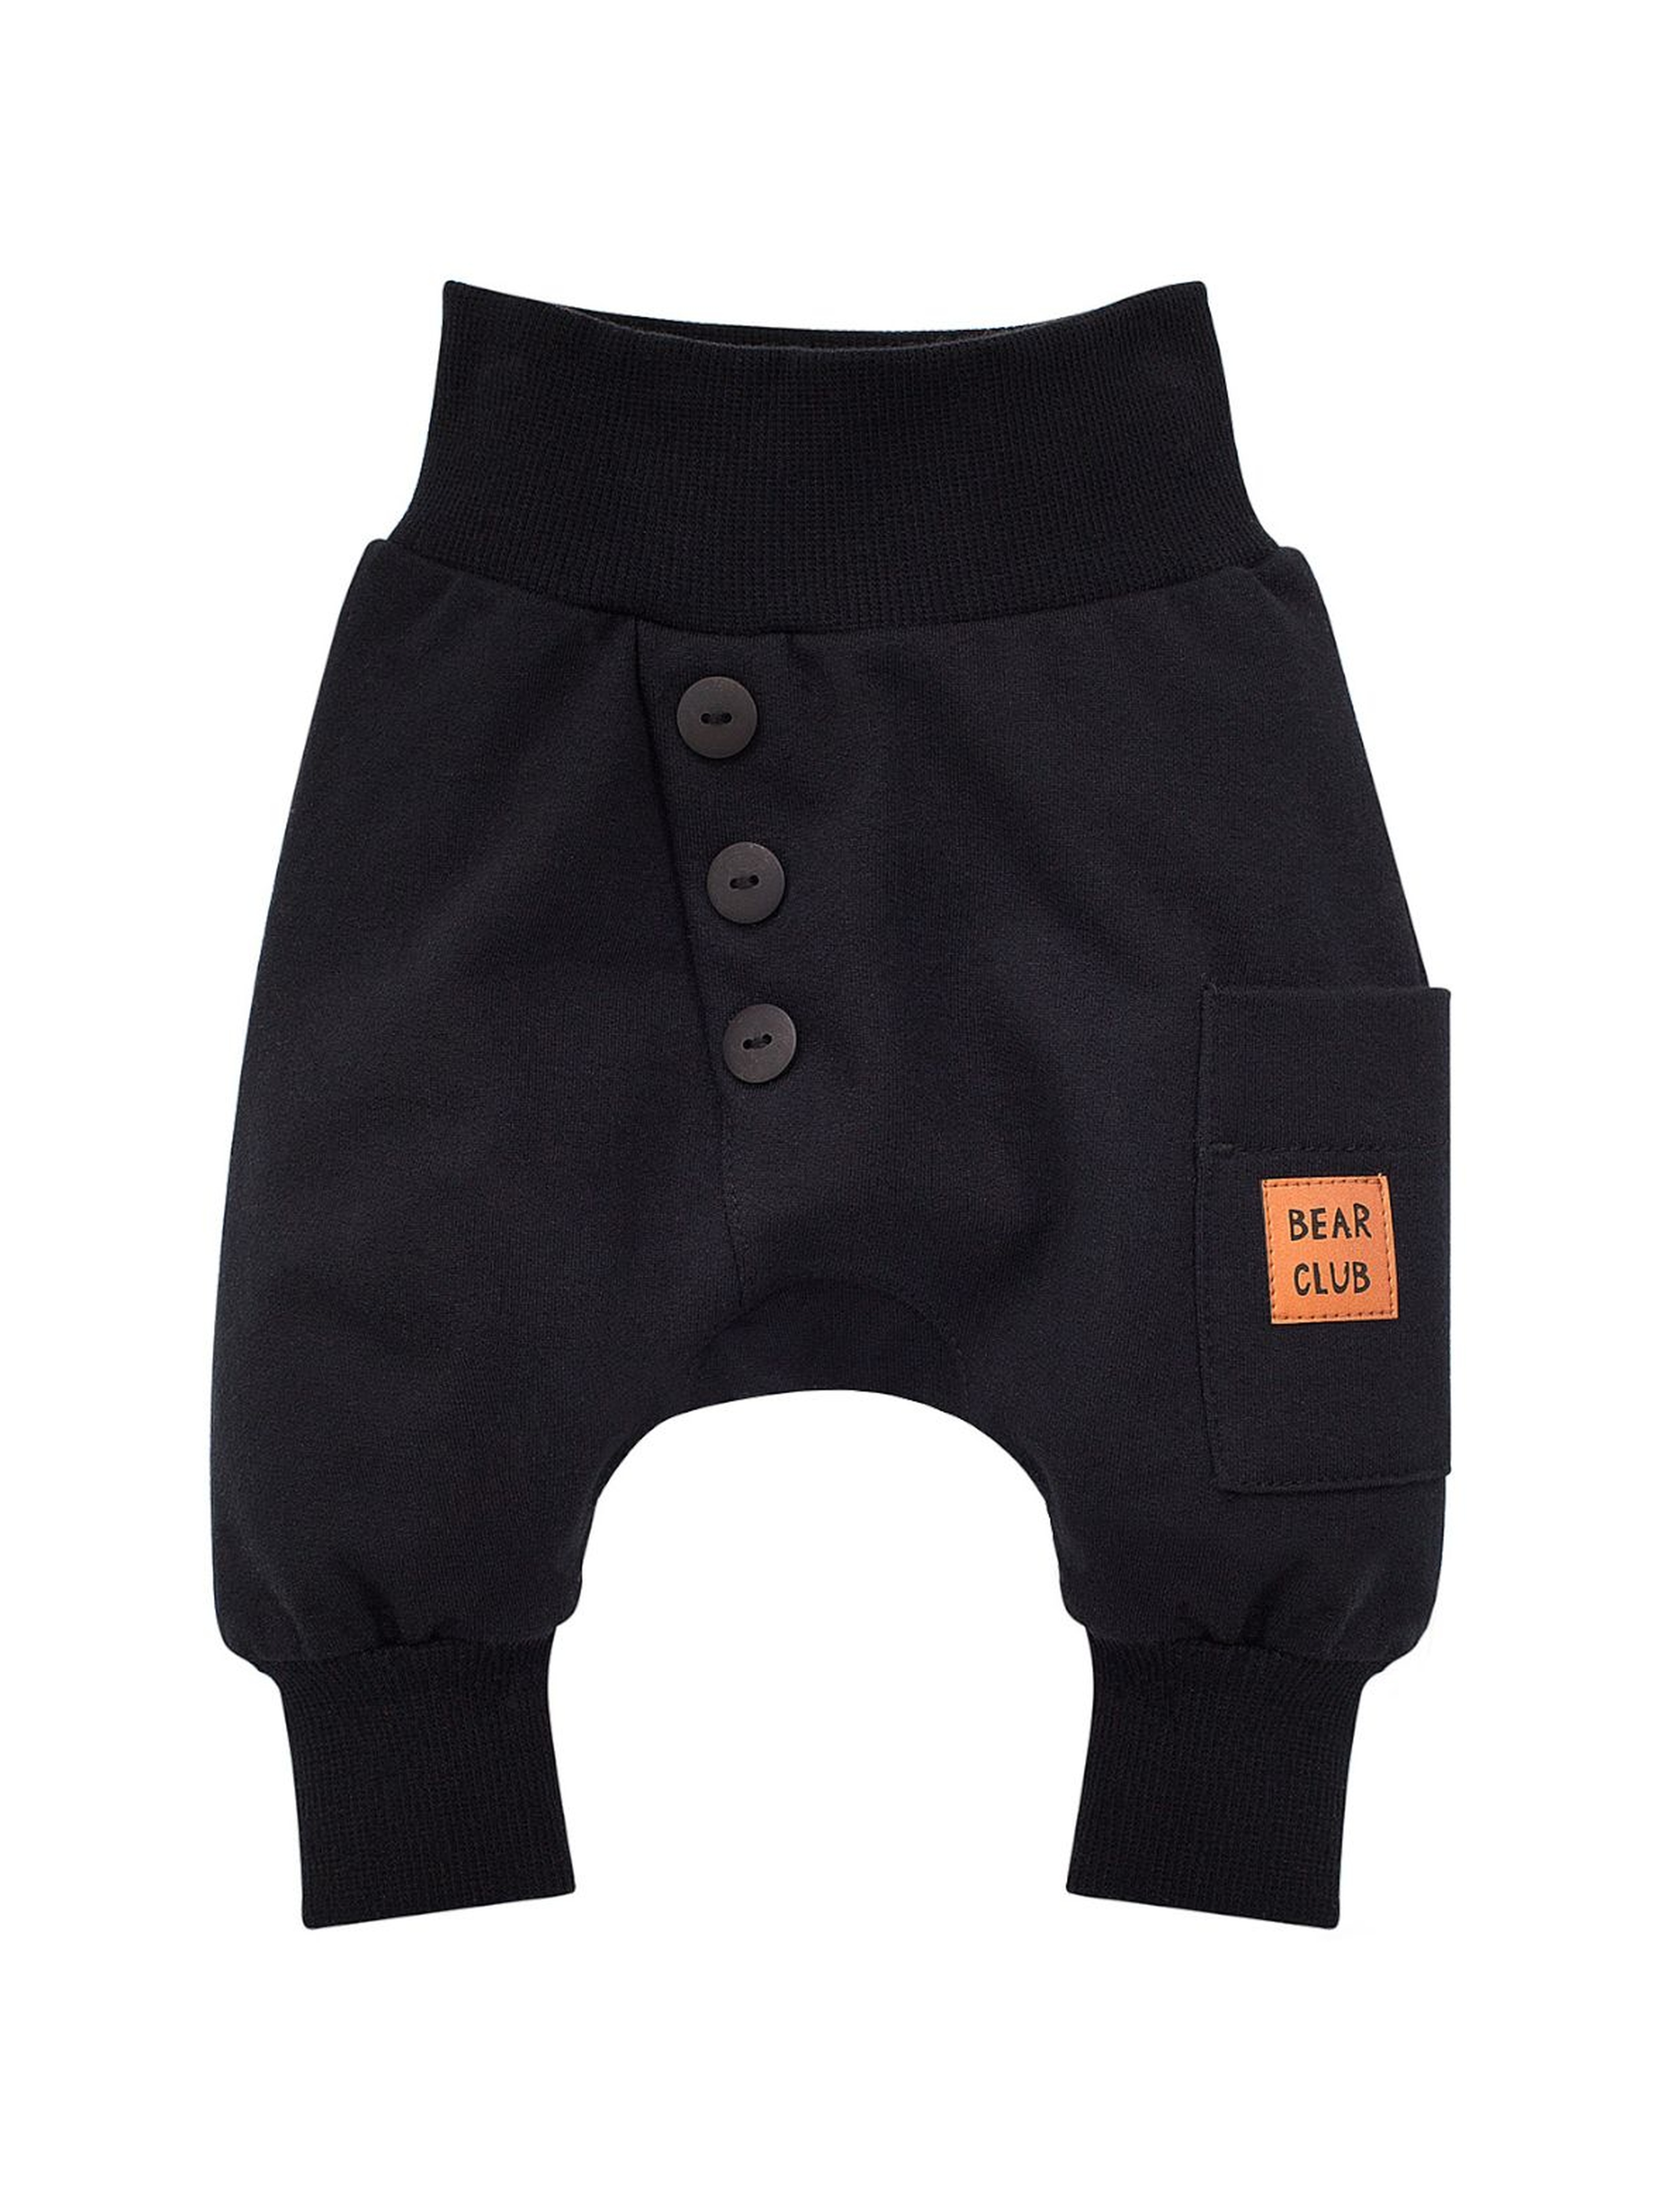 Spodnie - pumpy niemowlęce czarne Bears Club